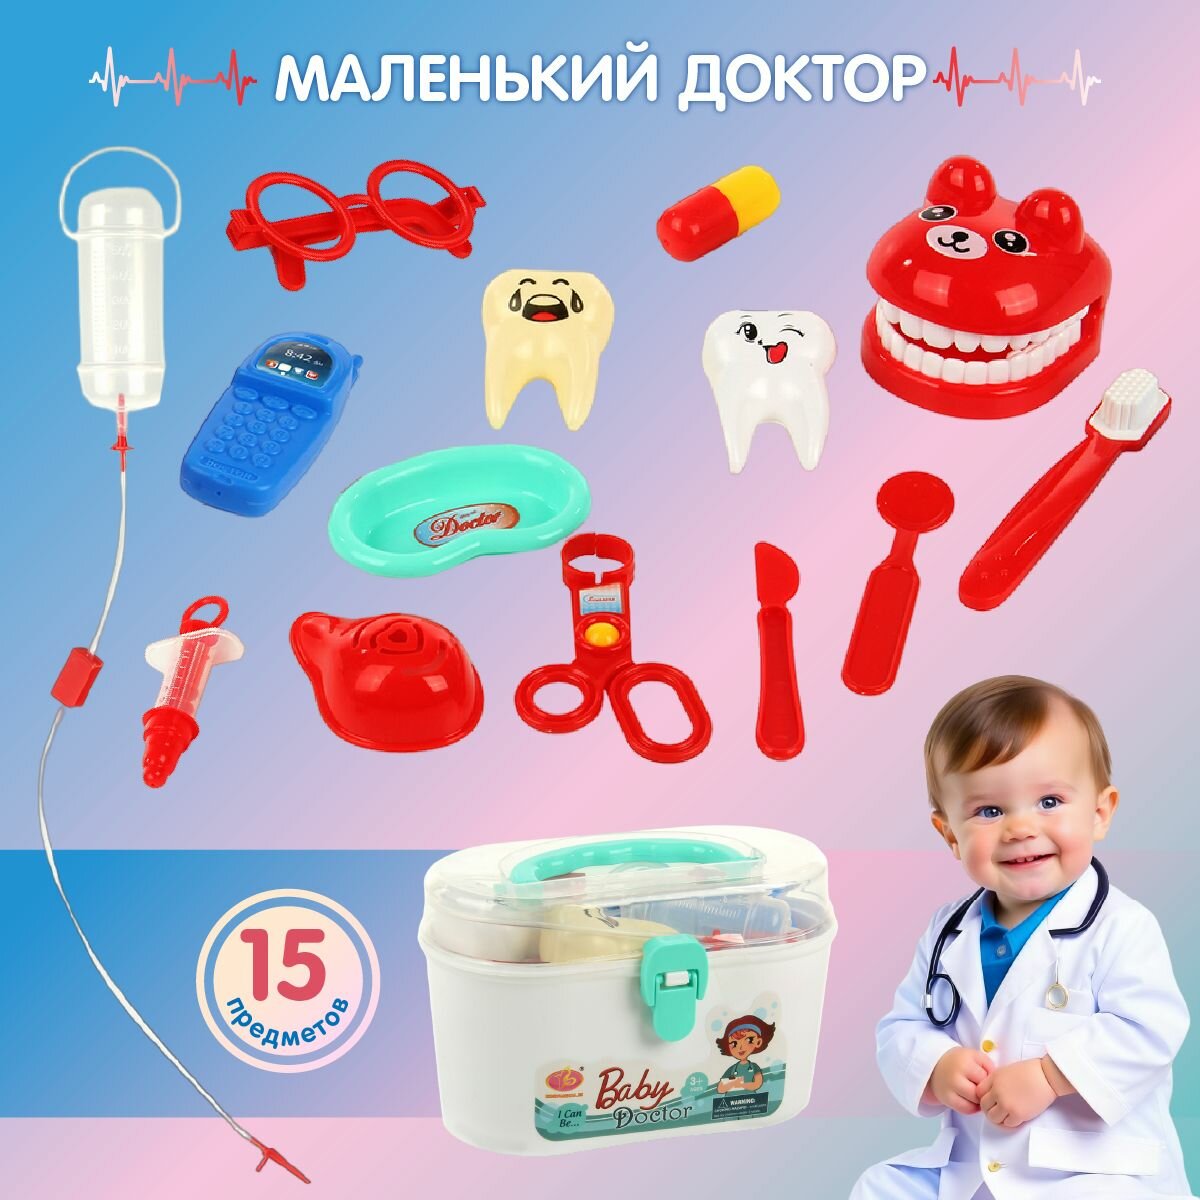 Детский игровой набор доктора Стоматолог, Veld Co / Игрушечные медицинские инструменты / Набор врача для детей